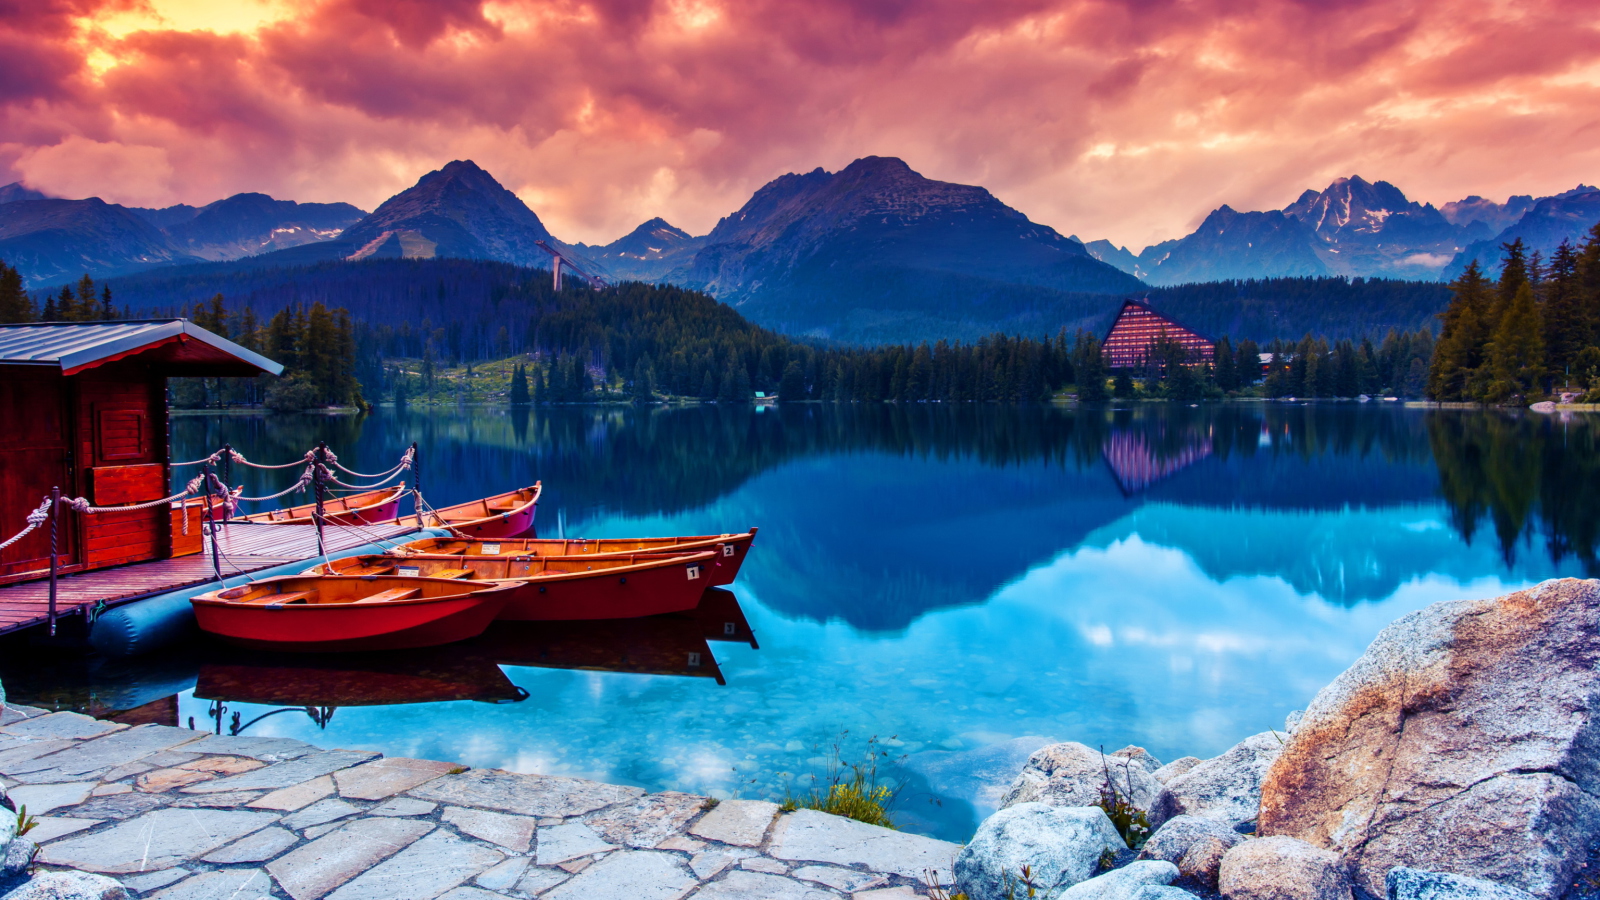 Обои Lake In Canada 1600x900